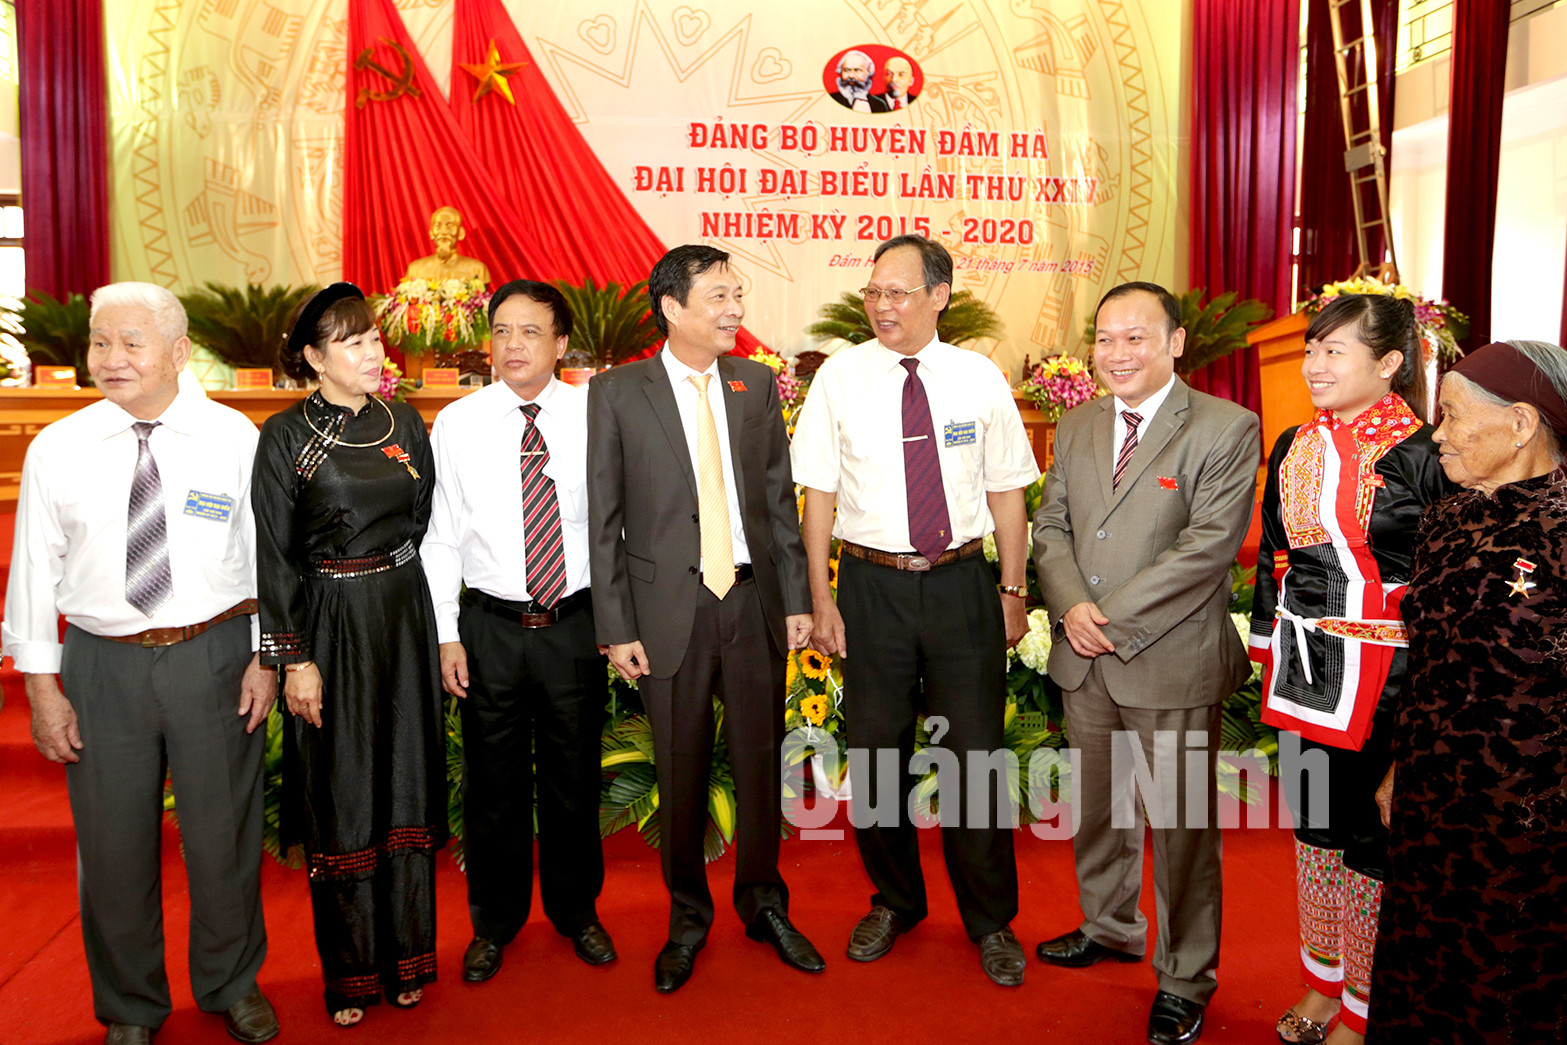 Đồng chí Nguyễn Văn Đọc, Bí thư Tỉnh ủy trò chuyện với các đại biểu dự Đại hội.